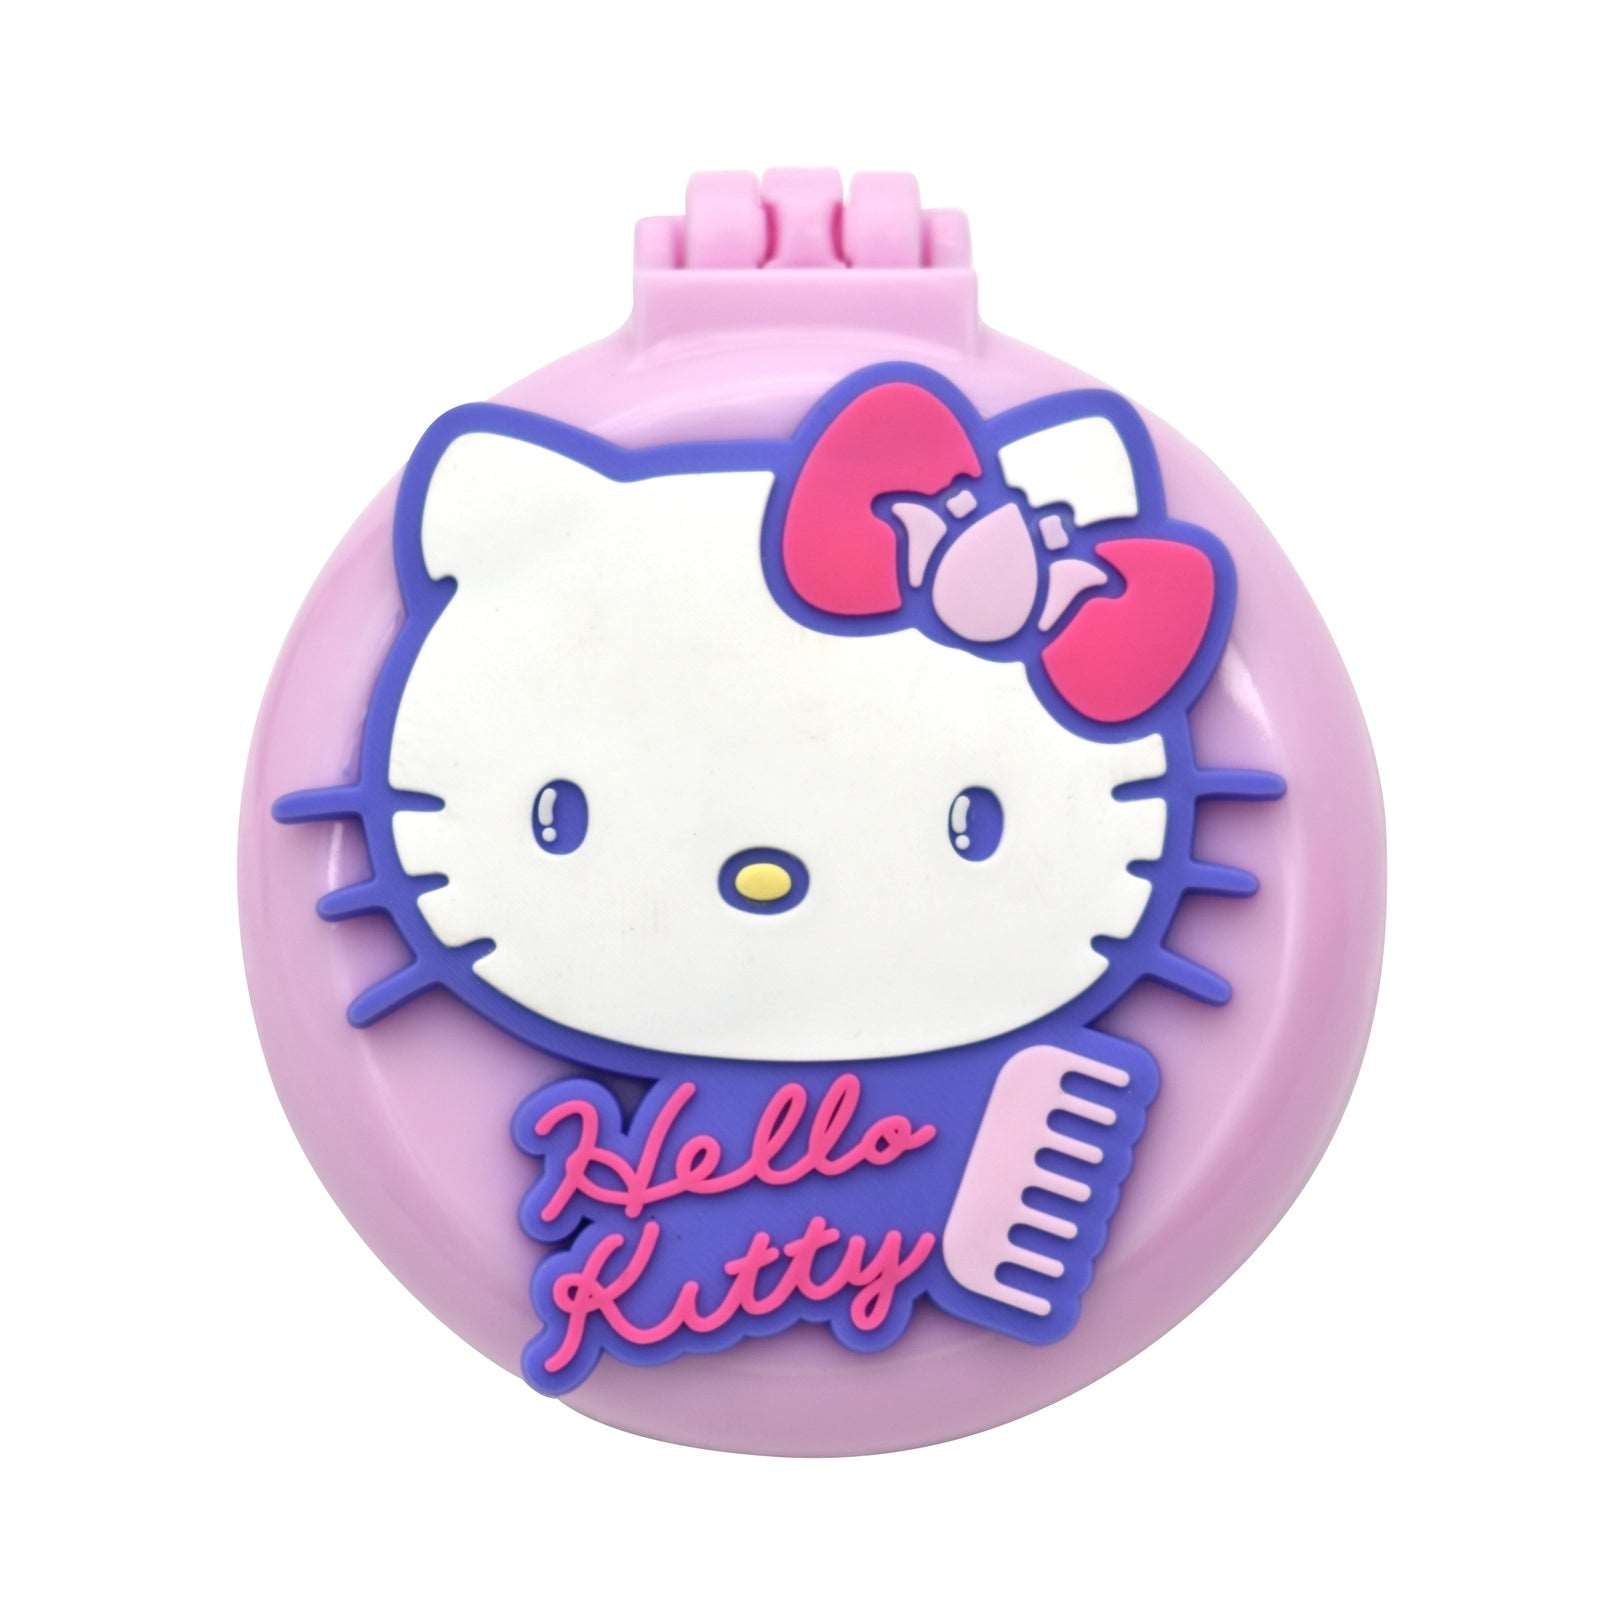 Spazzola per capelli e specchio pieghevoli Hello Kitty - Solo € 4.99! Acquista ora su ALLAN&DAYLE 